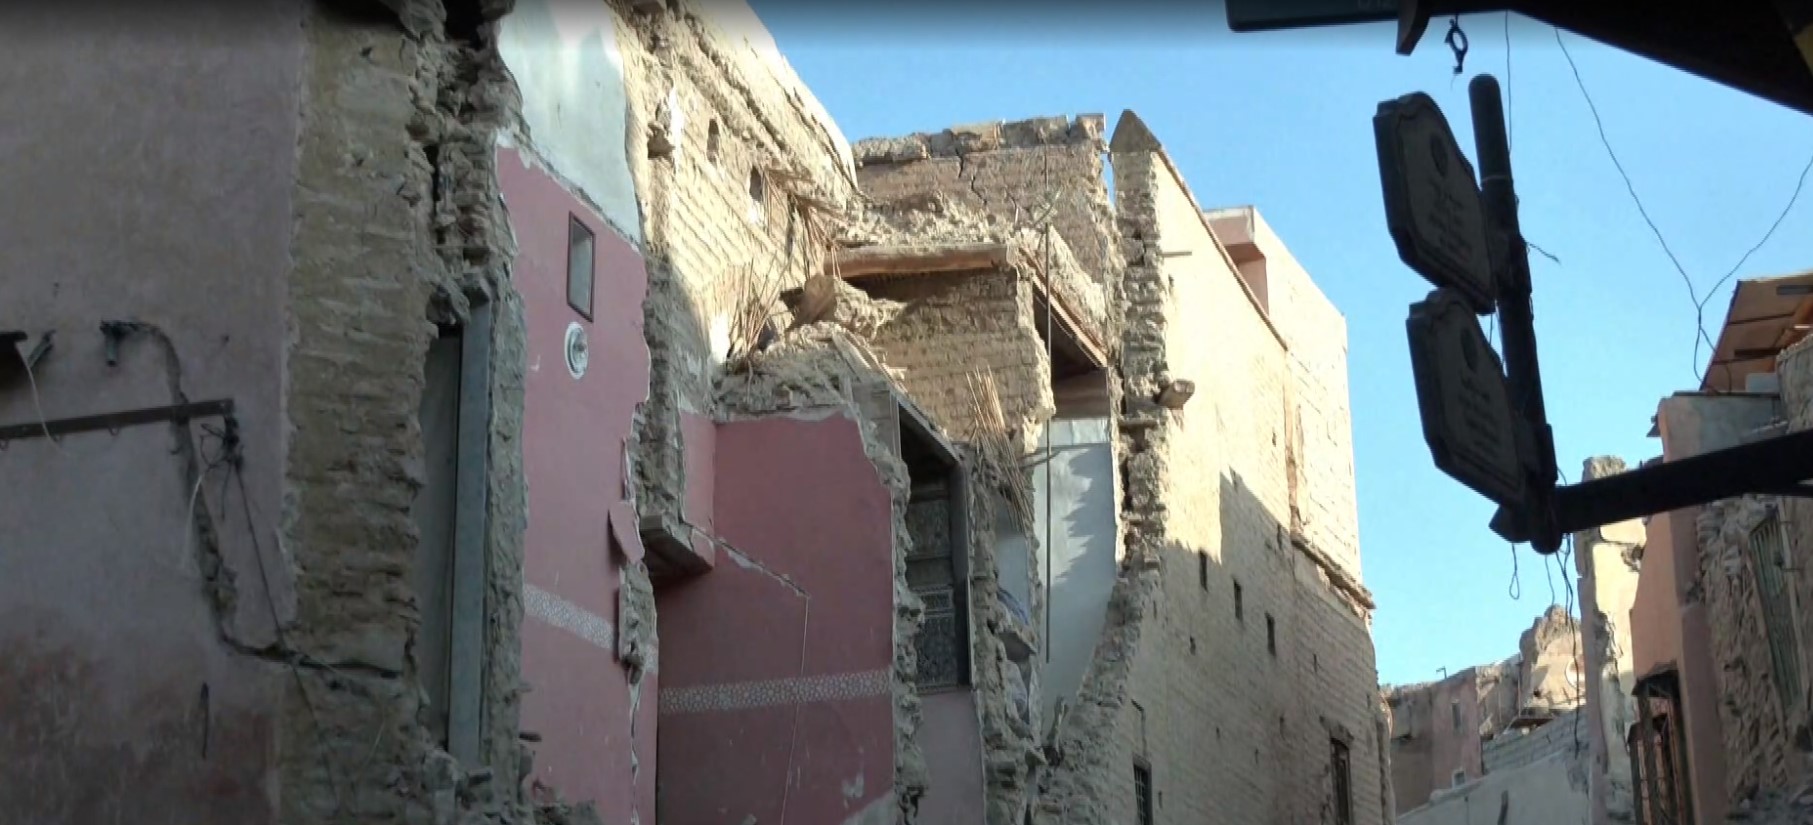 Χ. Φασουλάς (καθηγ. Γεωλογίας): Αυτόπτης μάρτυρας στο σεισμό του Μαρόκου